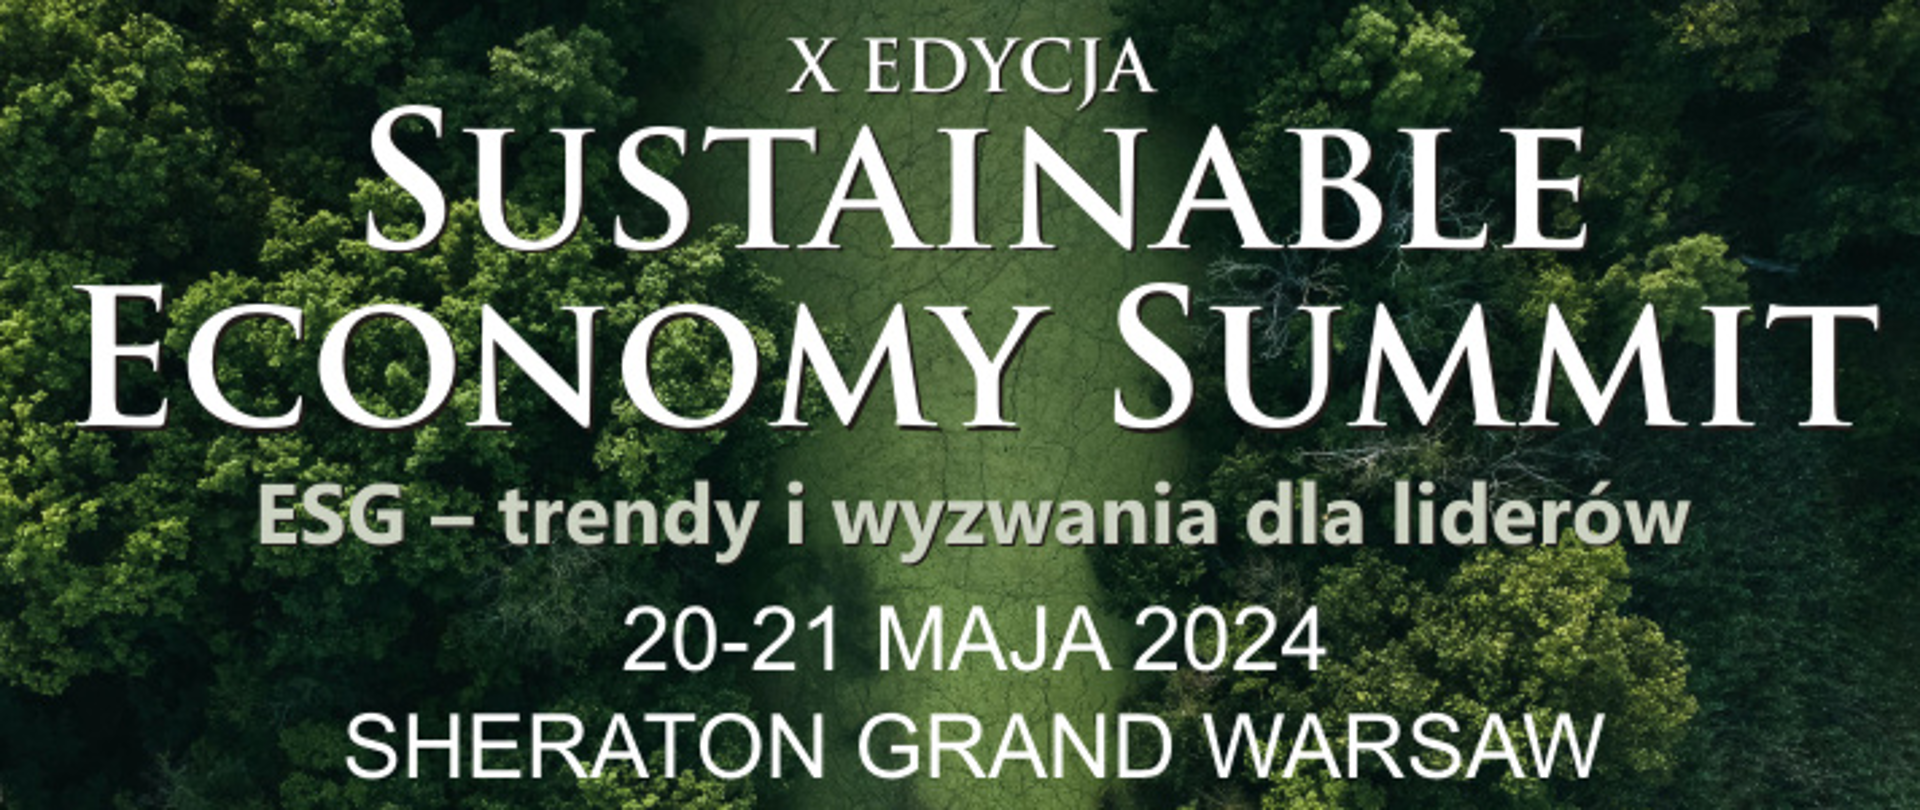 Plakat informacyjno-promocyjny dot. X edycji Sustainable Economy Summit, wydarzenia odbywającego się w dniach 20-21 maja 2024 roku oraz opis dot. Szczytu